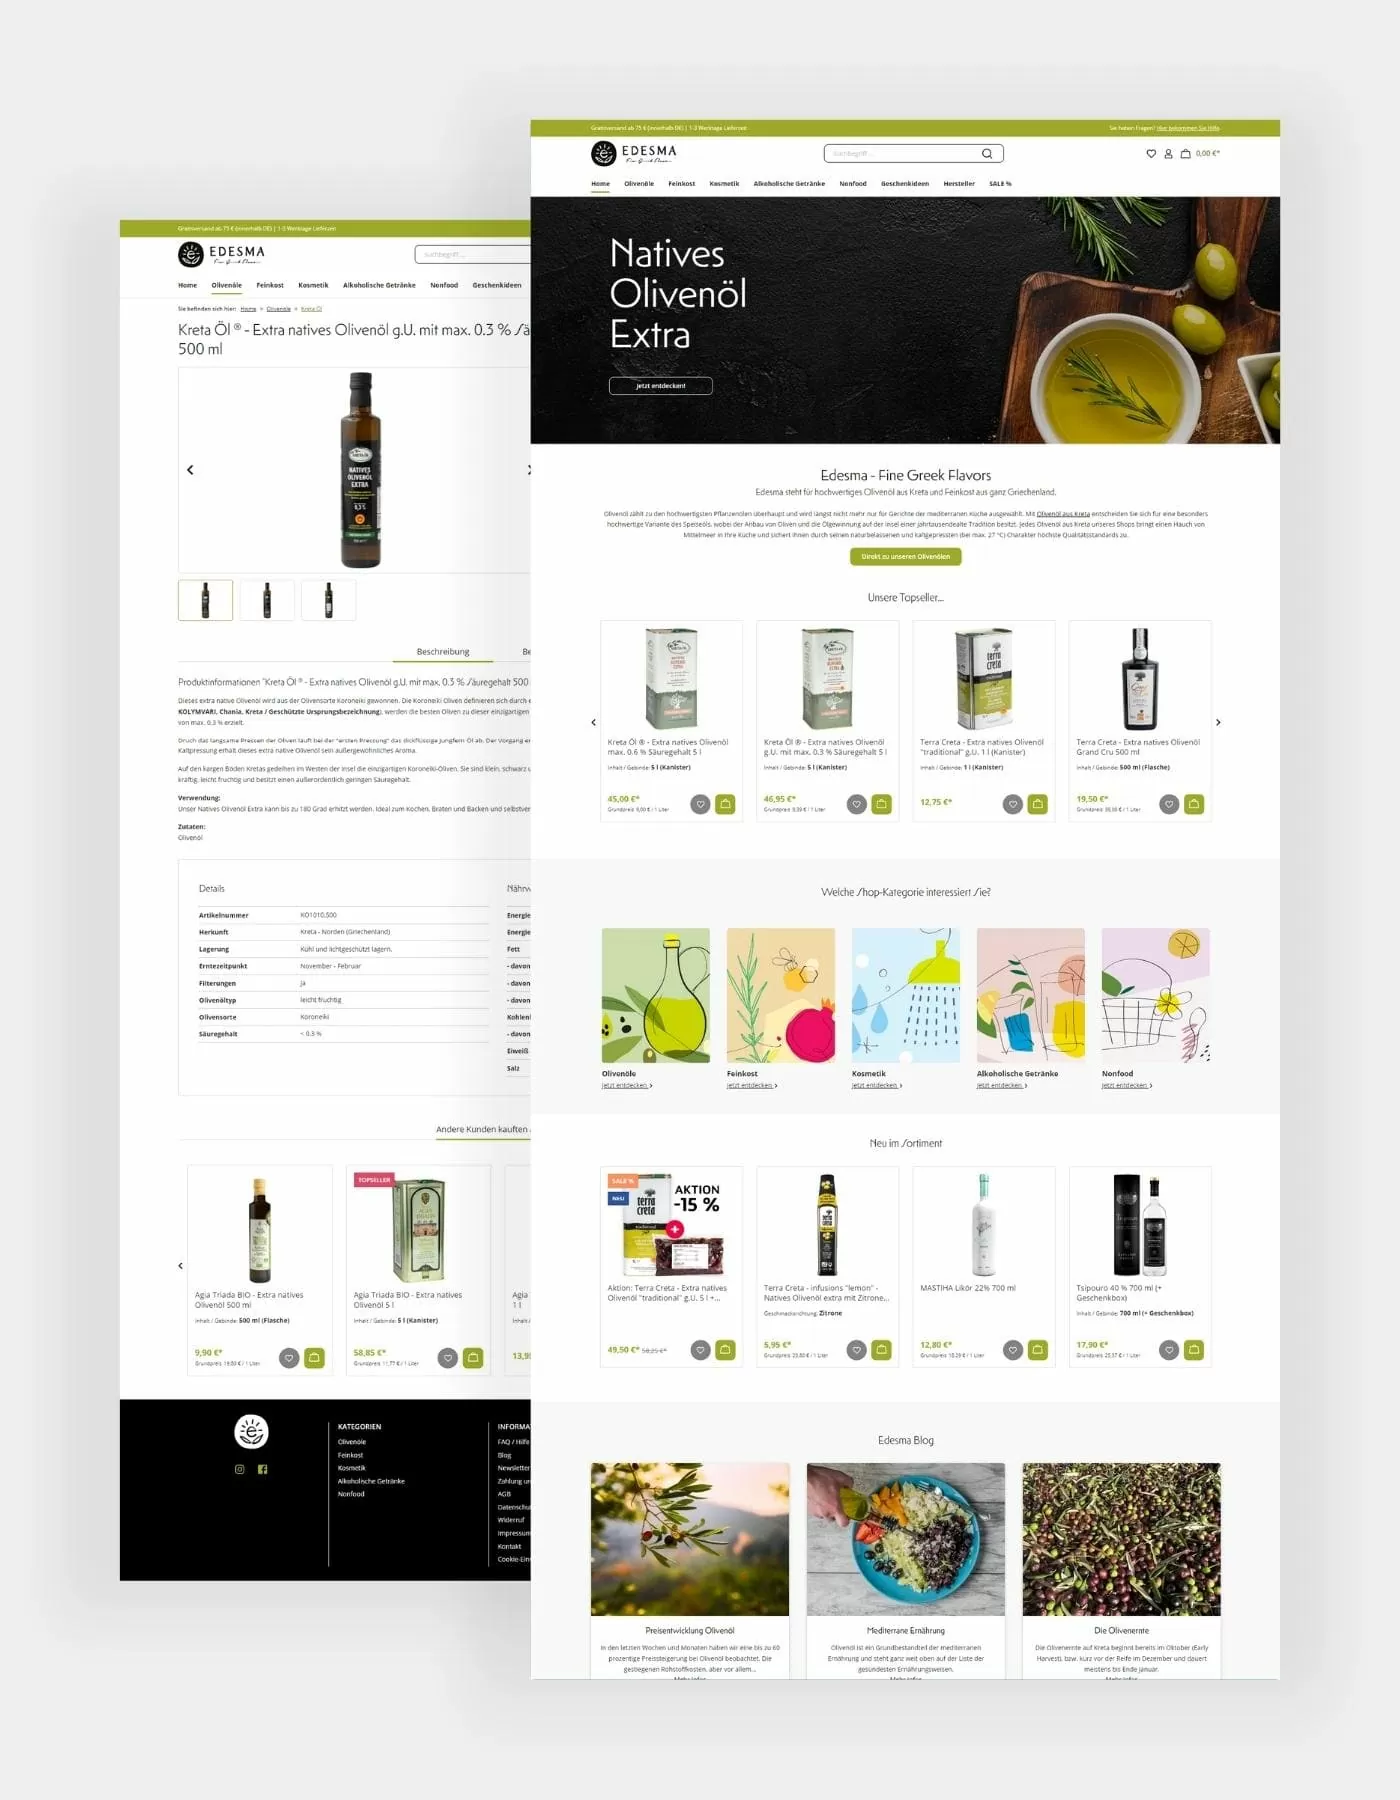 Hochkante Screenshots unter anderem der Startseite mit der Produktübersicht und den verfügbaren Kategorien. Zum anderen noch die Produktdetailseite von Kreta Öl aus dem Edesma Shop